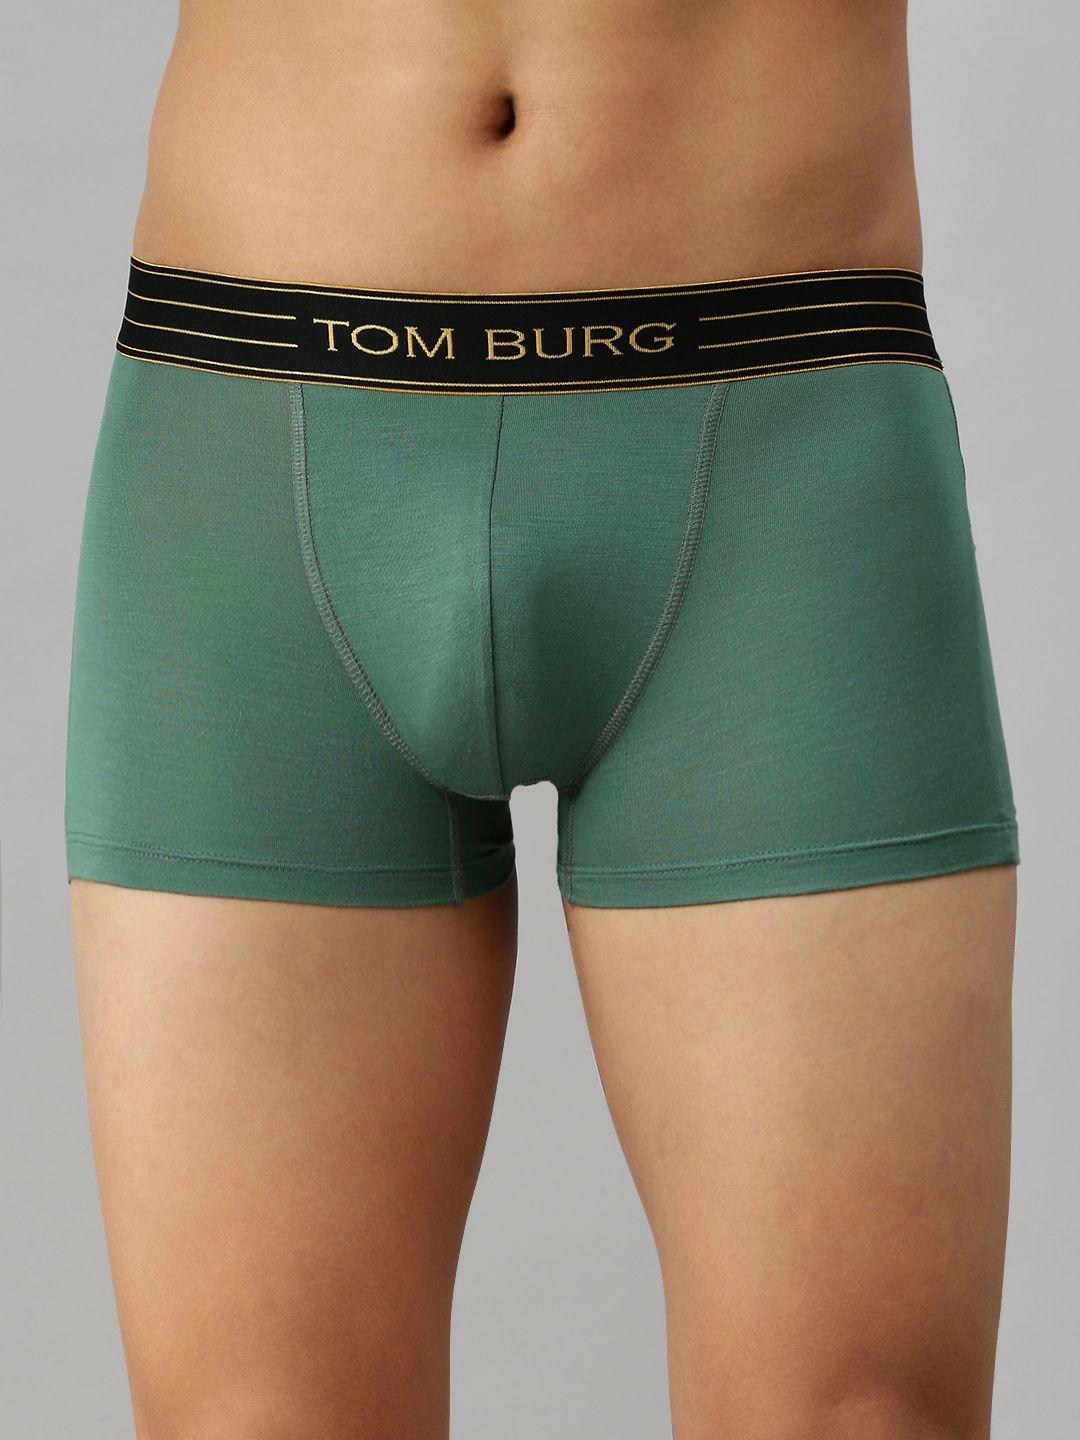 tom-burg-men-olive-green-solid-trunks-3037